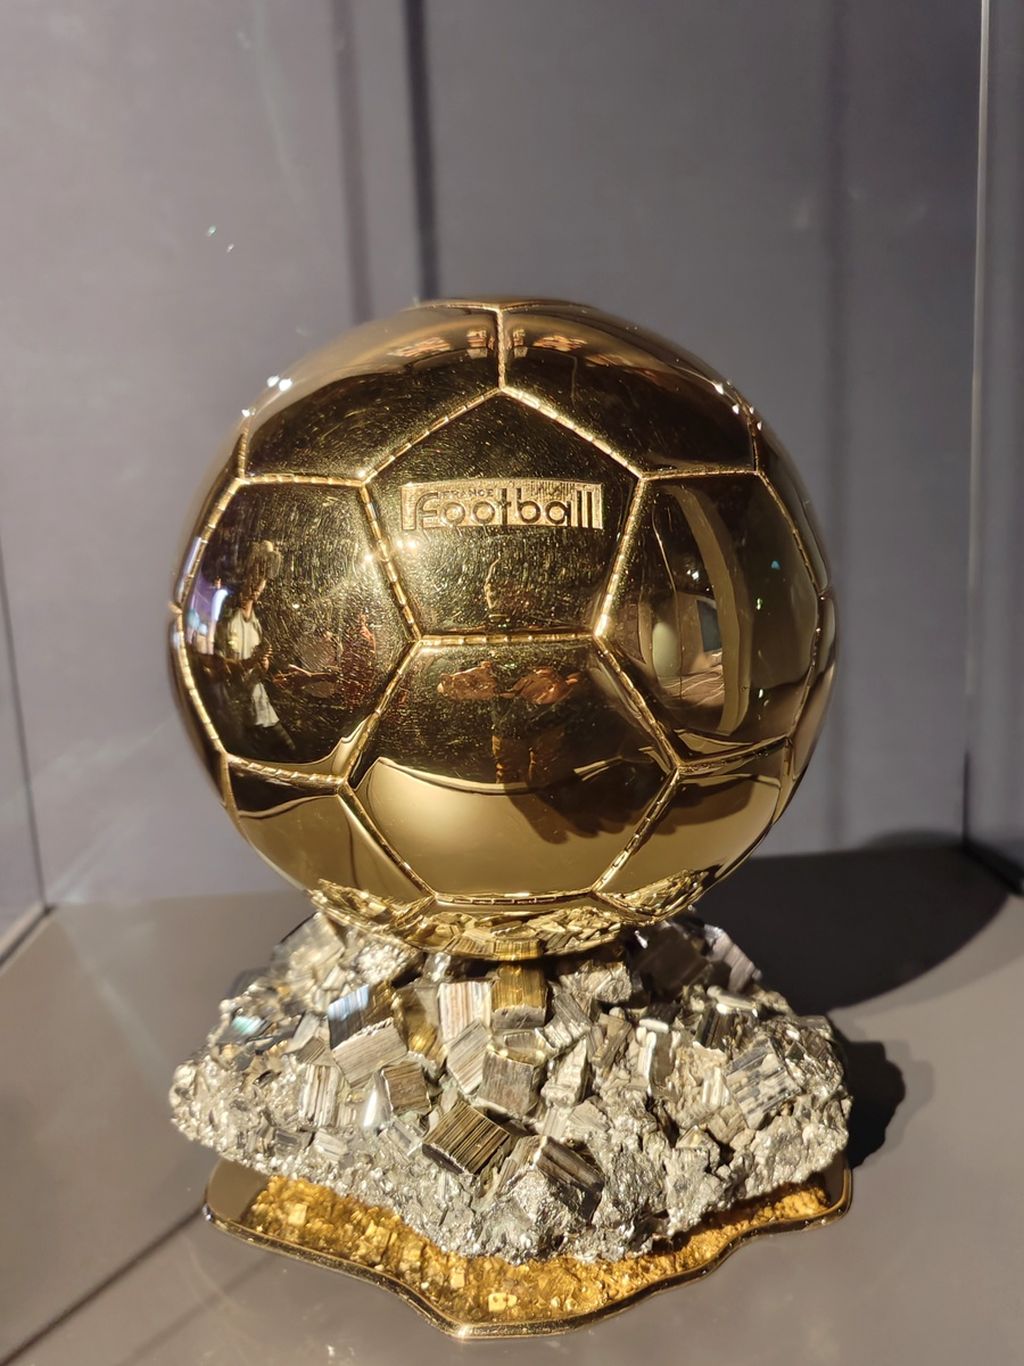 Salah satu trofi Ballon d'Or milik bintang sepak bola Argentina, Lionel Messi, yang dipajang di 3-2-1 Museum Olimpiade dan Olahraga Qatar, Doha, Qatar, Selasa (29/11/2022). Museum itu menjadi salah satu sarana pendidikan olahraga yang berada di kawasan Zona Aspire.